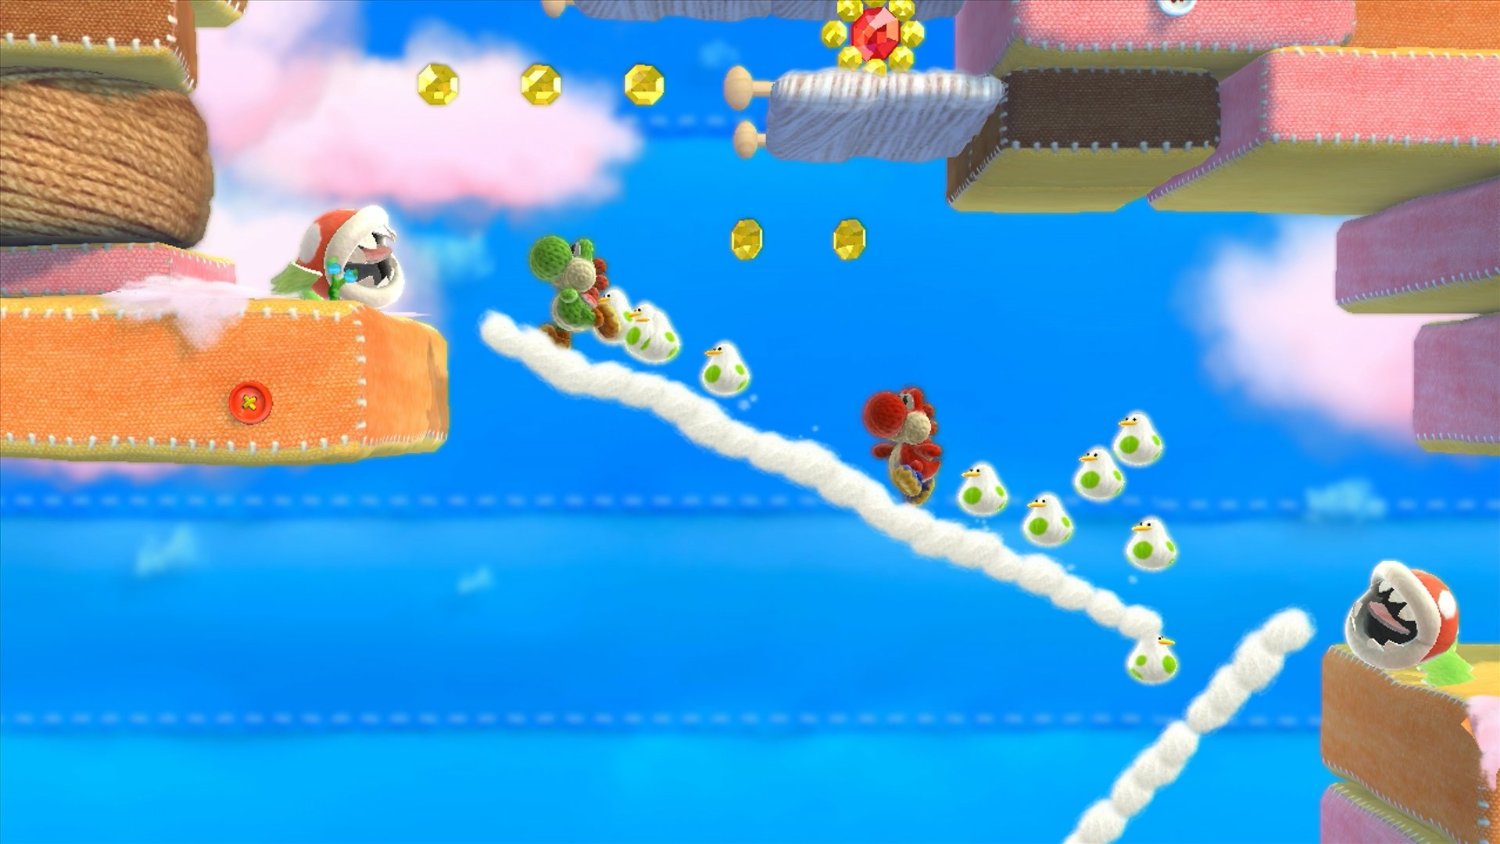 Yoshi’s Woolly World Wii U Review Screenshot 2